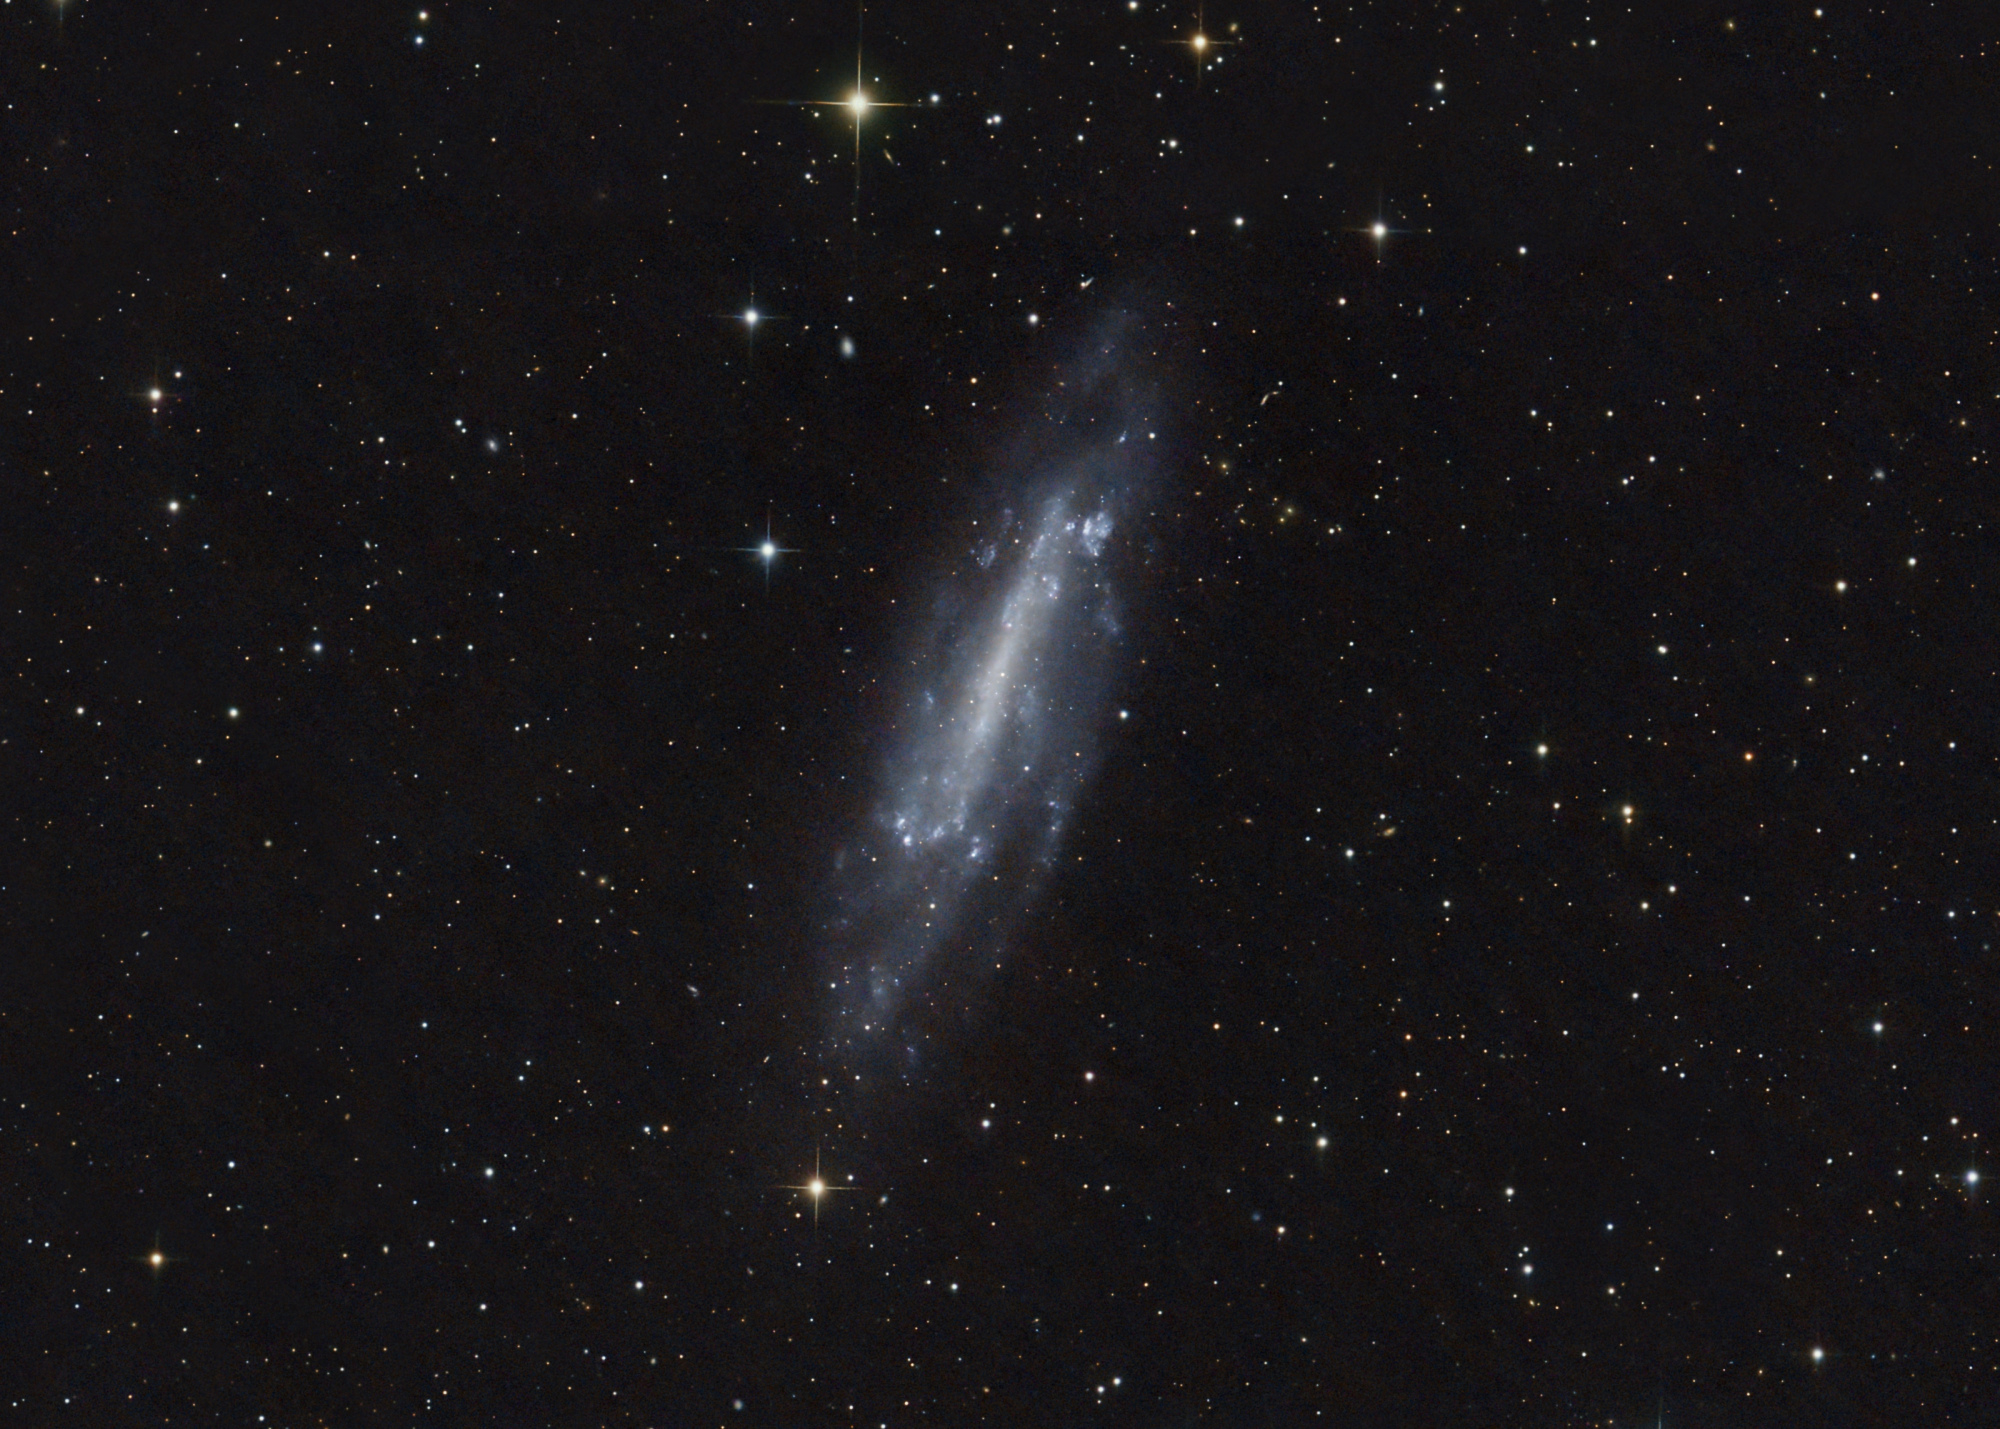 NGC4236_Drizzle1_FinPix_CropGalaxie.thumb.jpg.fc67709f257779f79373764cfb6d9094.jpg